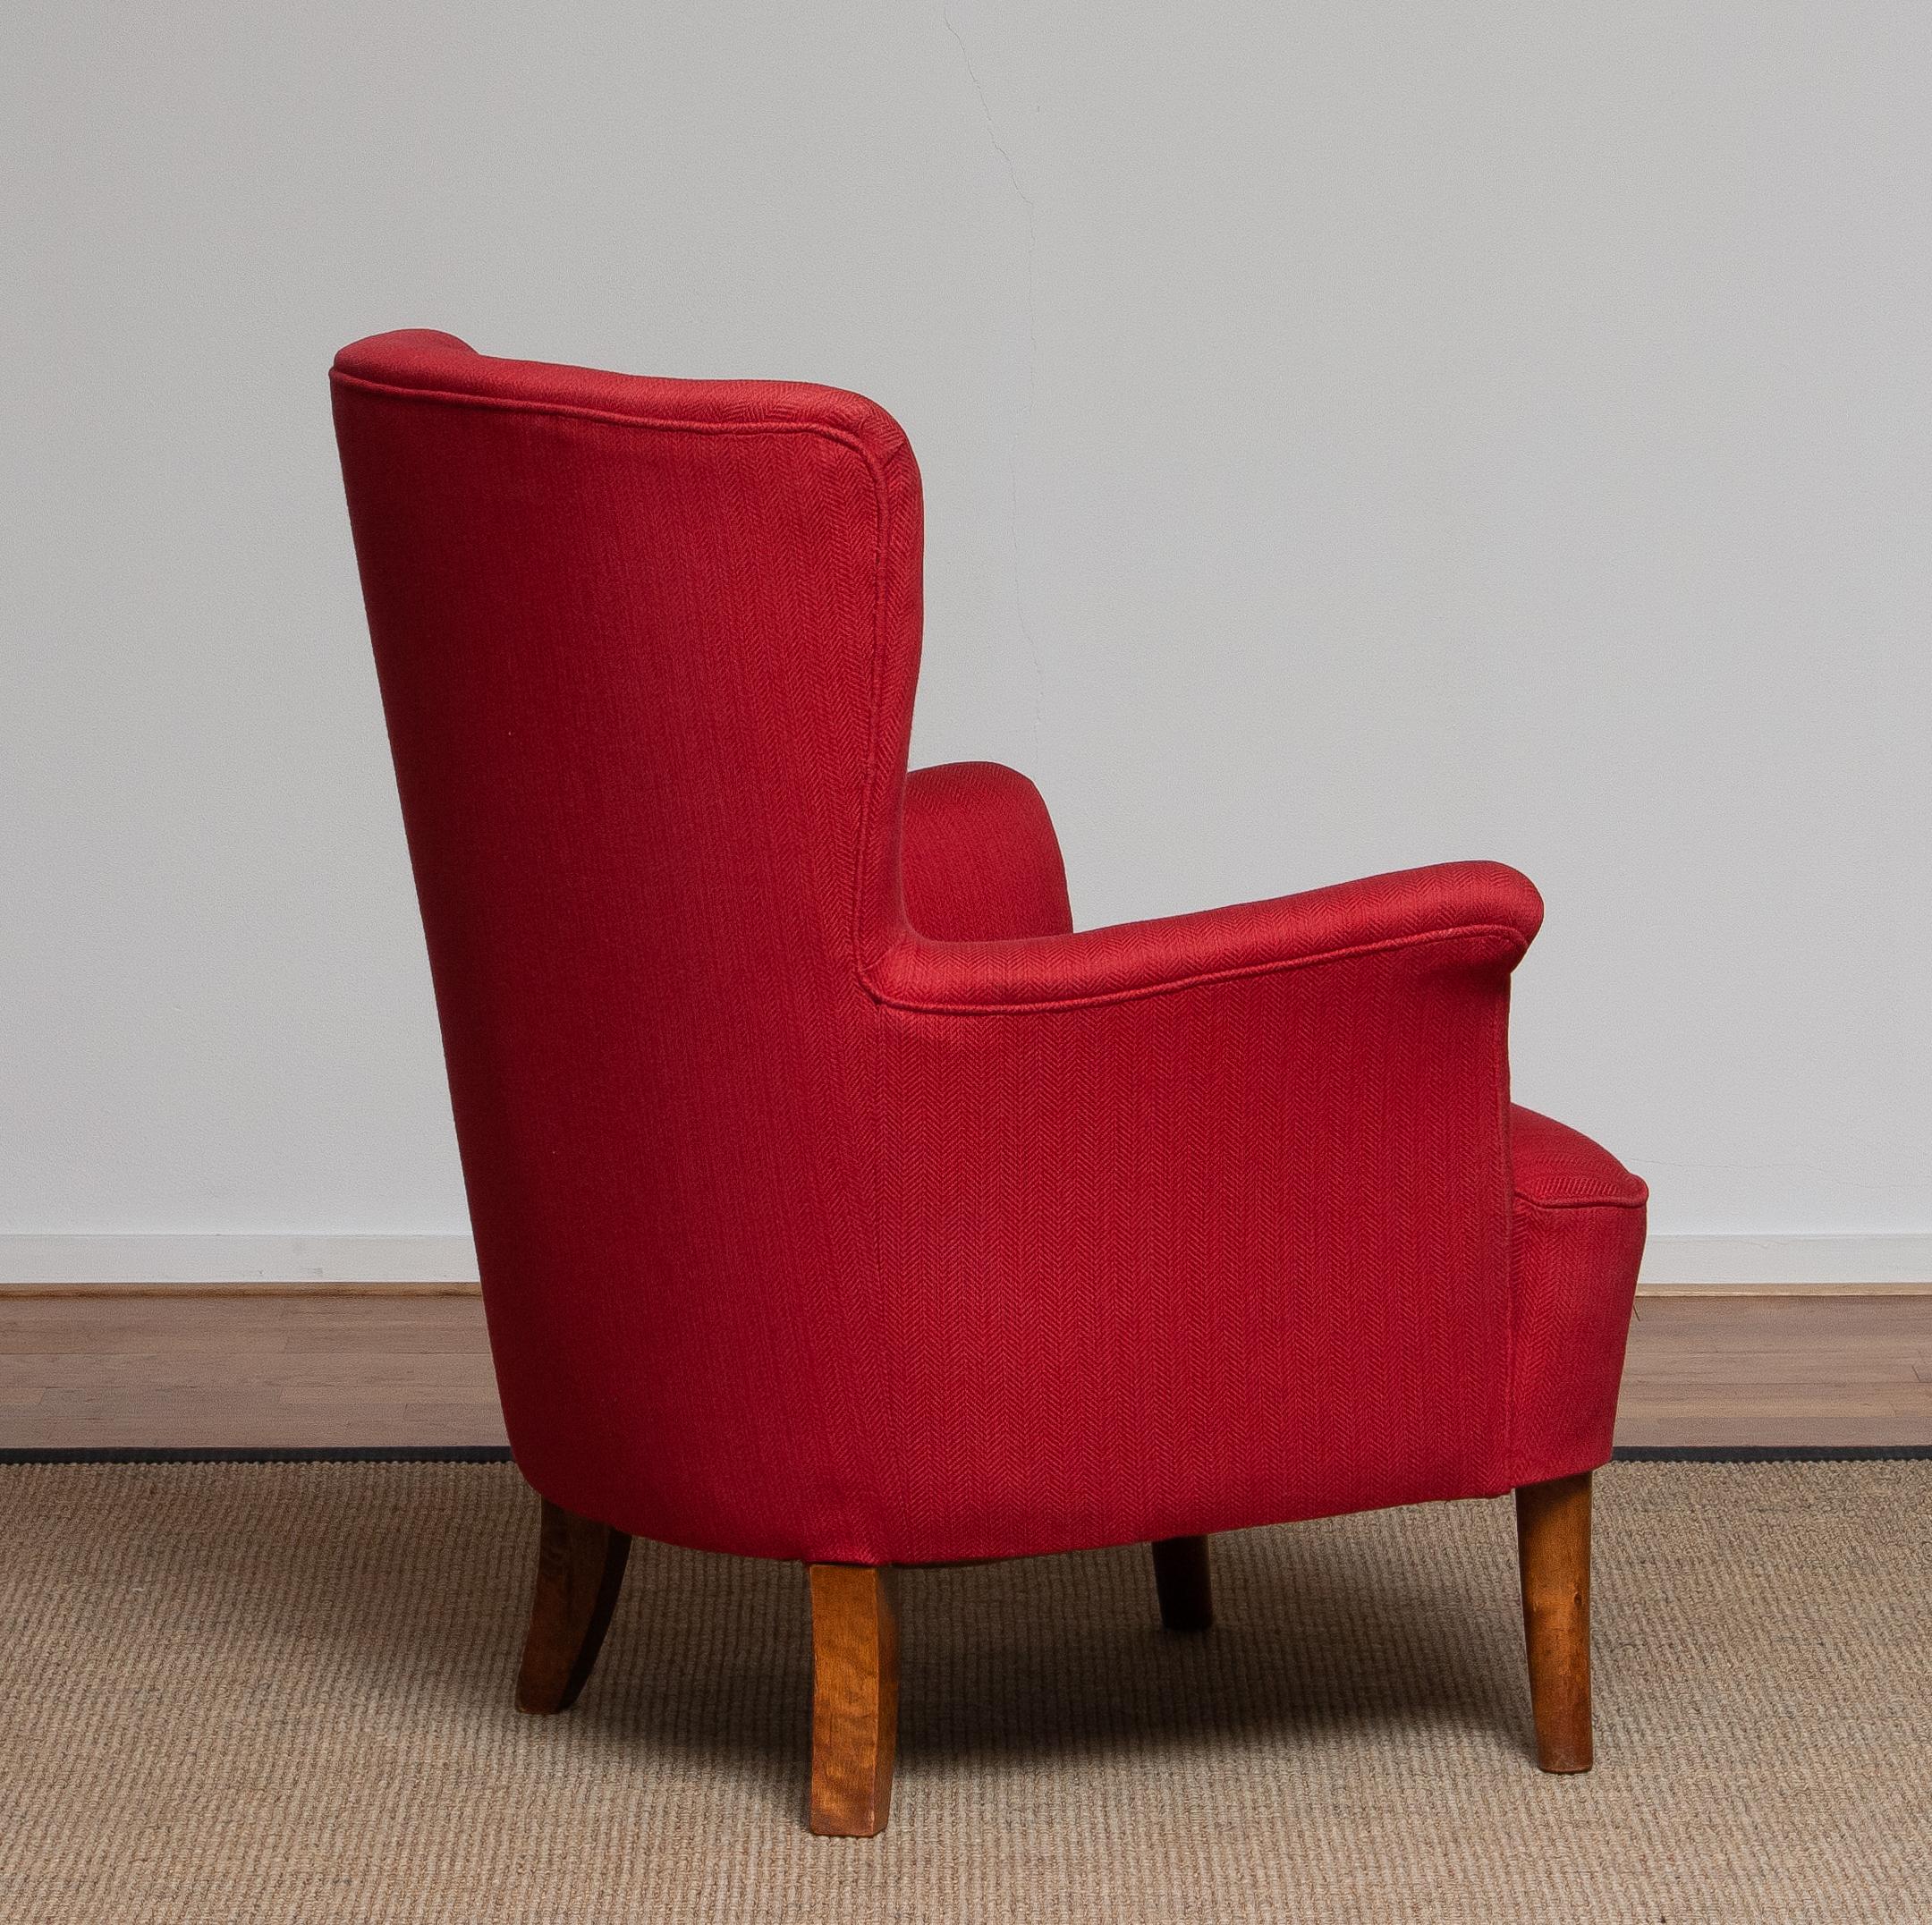 1940s, Fuchsia Easy or Lounge Chair by Carl Malmsten for Oh Sjogren, Sweden 3